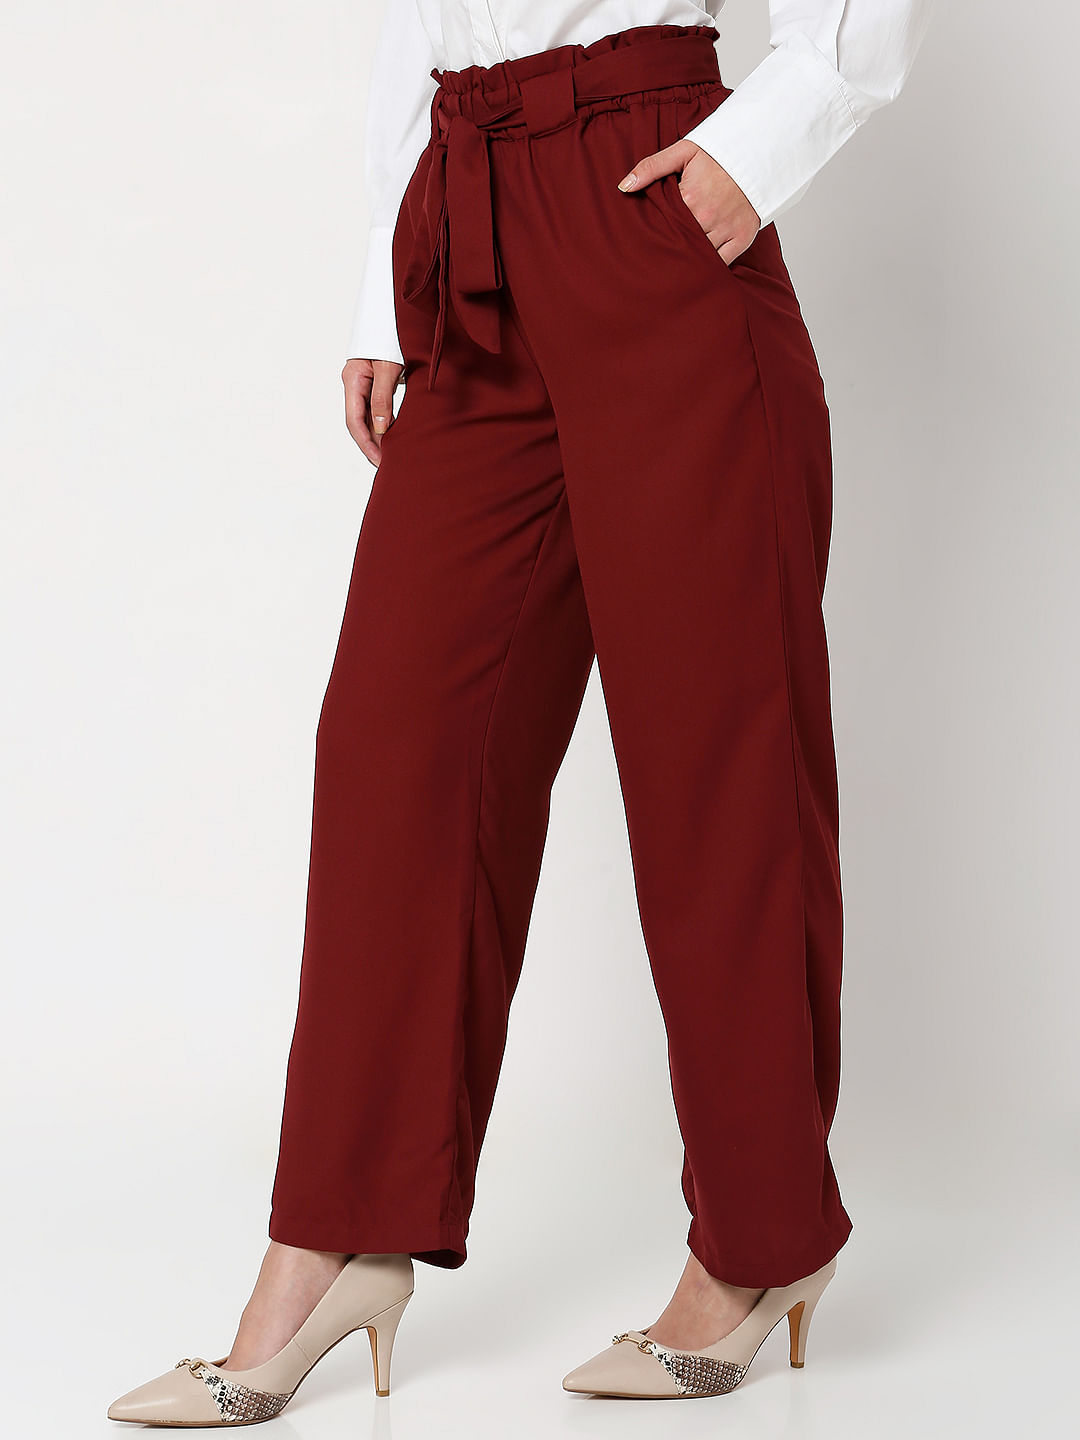 Buy HM Women Beige Linen Blend Paper Bag Trousers  Trousers for Women  10431584  Myntra